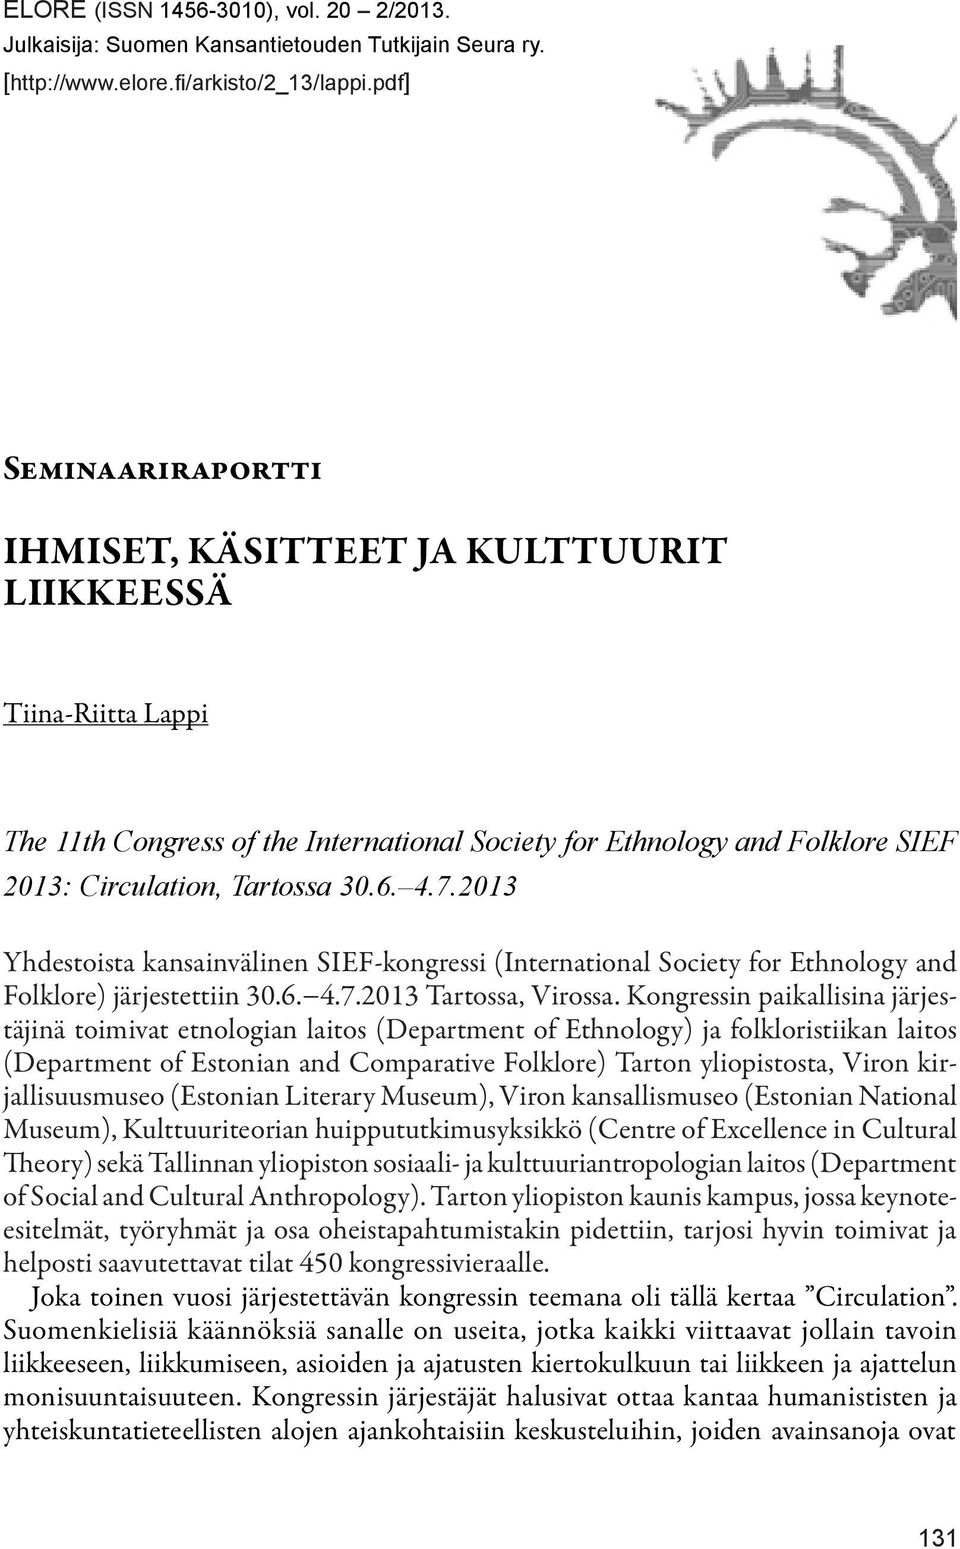 4.7.2013 Yhdestoista kansainvälinen SIEF-kongressi (International Society for Ethnology and Folklore) järjestettiin 30.6. 4.7.2013 Tartossa, Virossa.